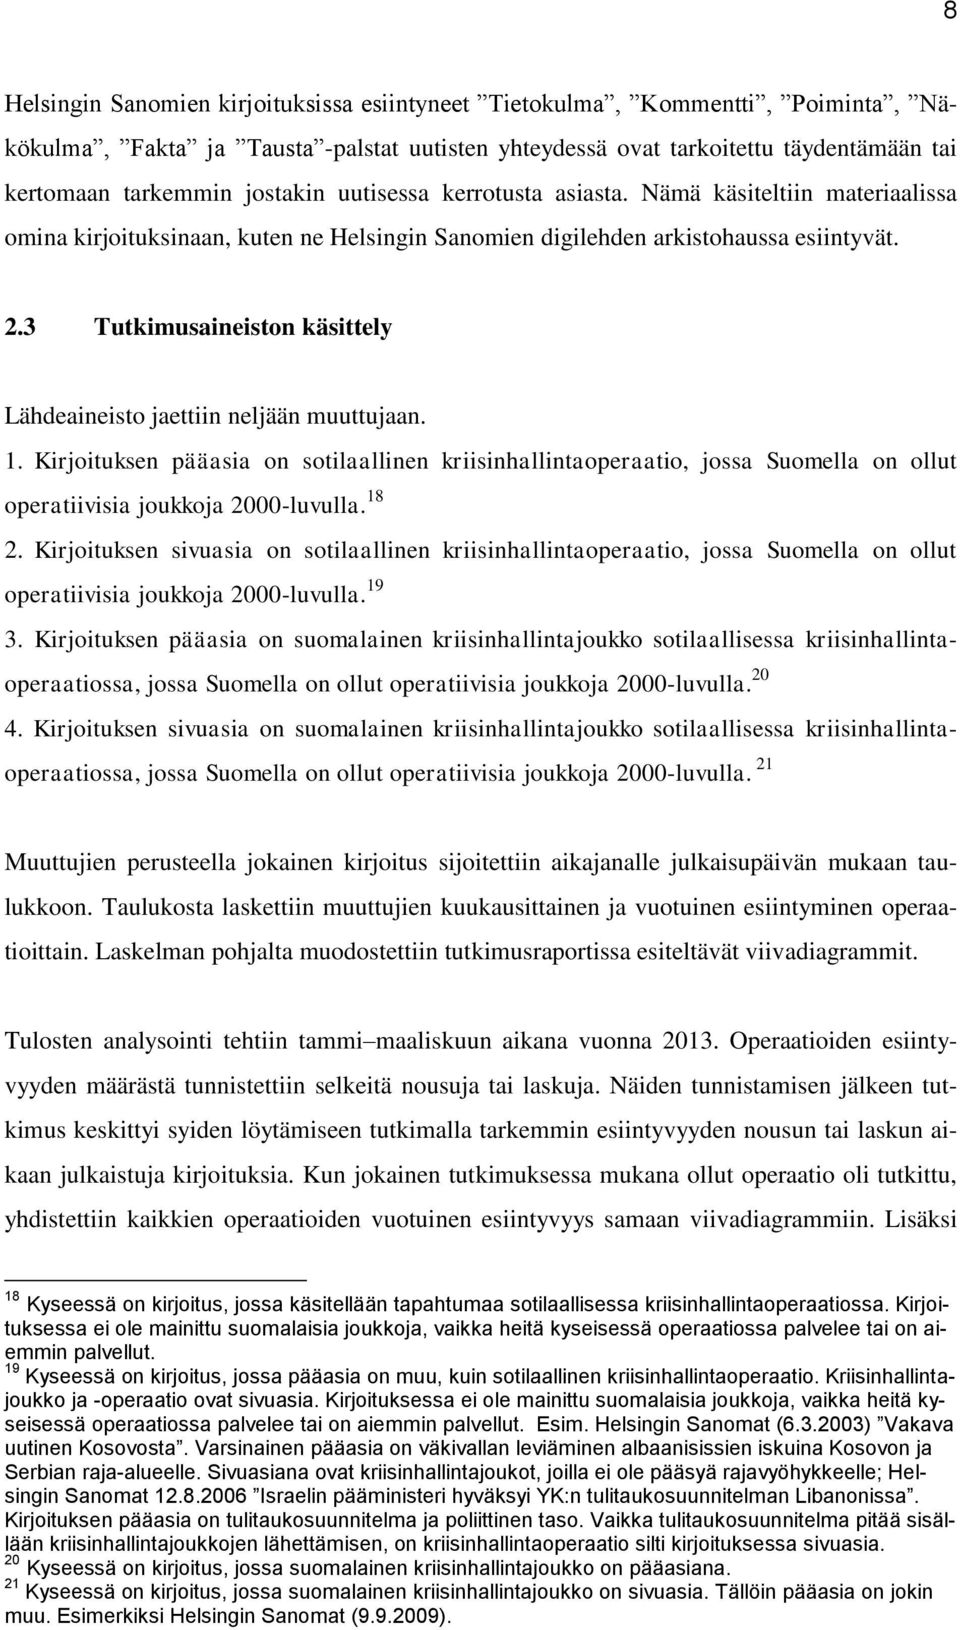 3 Tutkimusaineiston käsittely Lähdeaineisto jaettiin neljään muuttujaan. 1. Kirjoituksen pääasia on sotilaallinen kriisinhallintaoperaatio, jossa Suomella on ollut operatiivisia joukkoja 2000-luvulla.